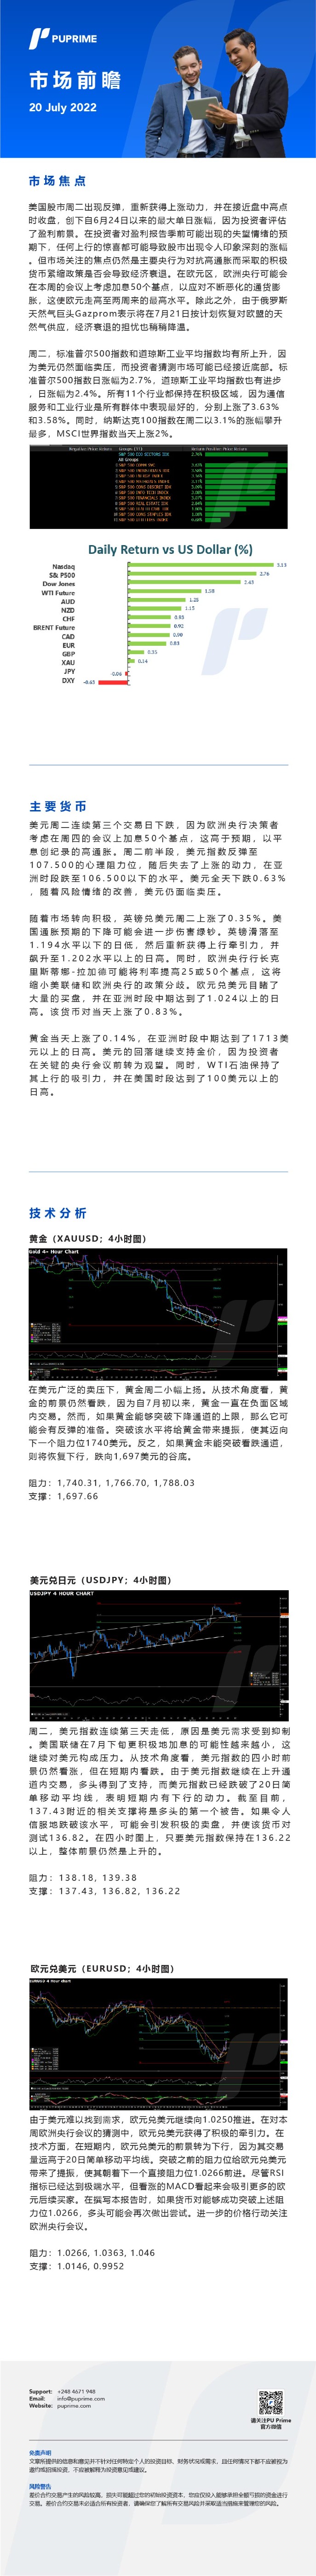 20072022Daily Market Analysis__CHN.jpg